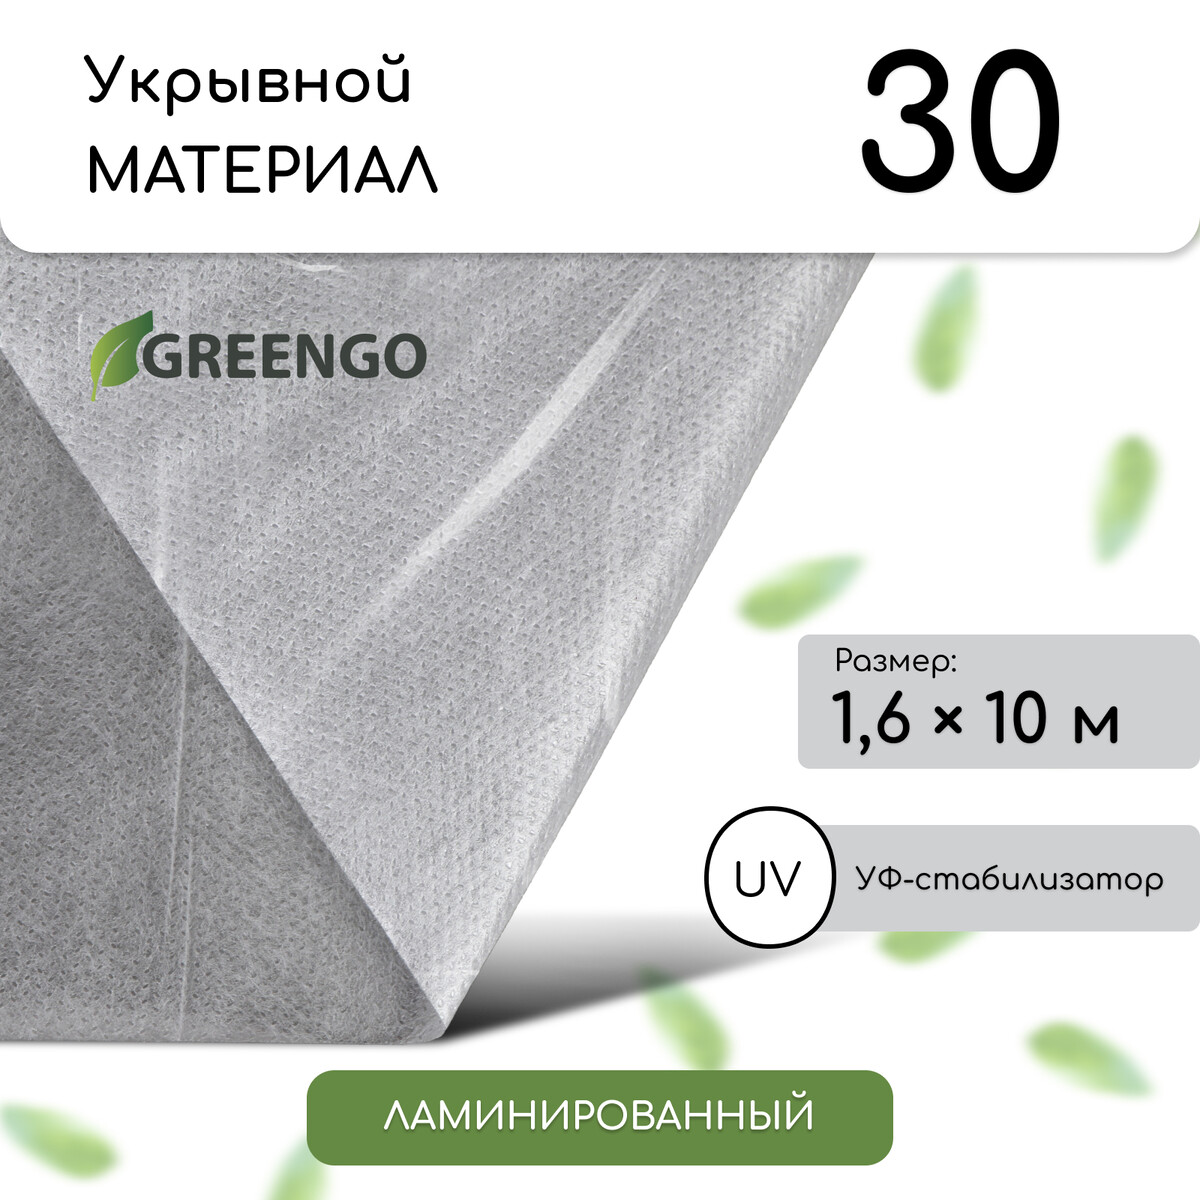 Материал укрывной, 10 × 1,6 м, ламинированный, плотность 30 г/м², спанбонд с уф-стабилизатором, белый, greengo Greengo